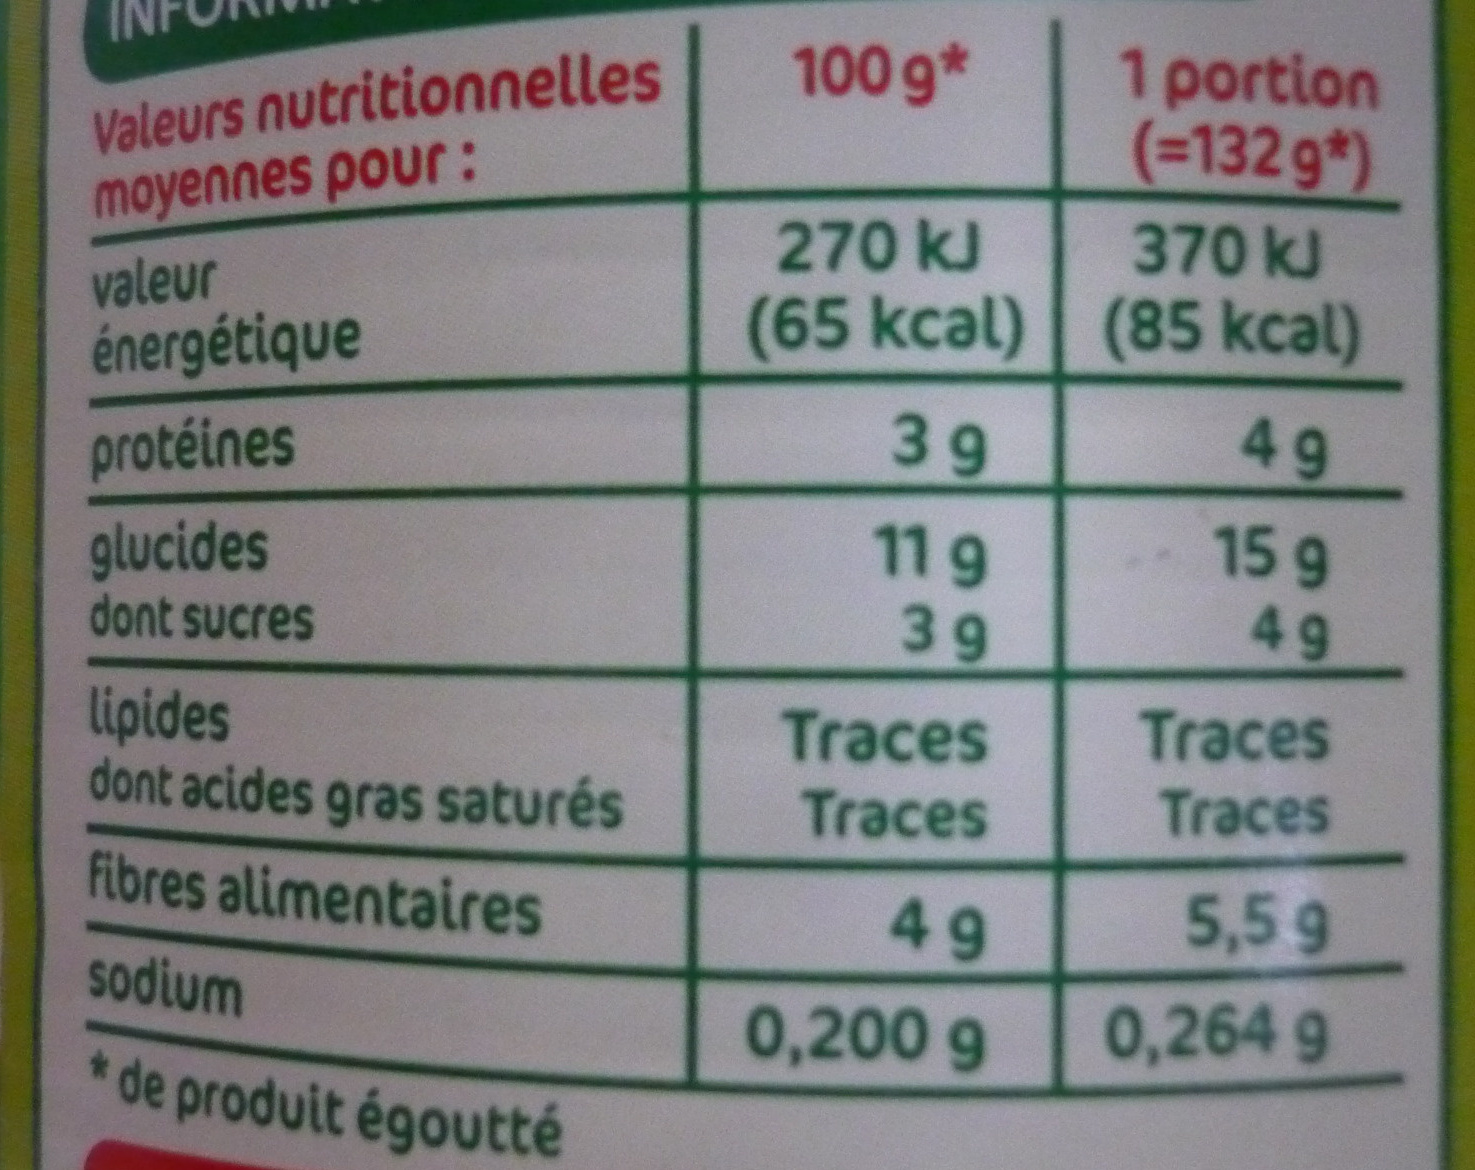 Petits pois carottes très fins 1/2 - Nutrition facts - fr